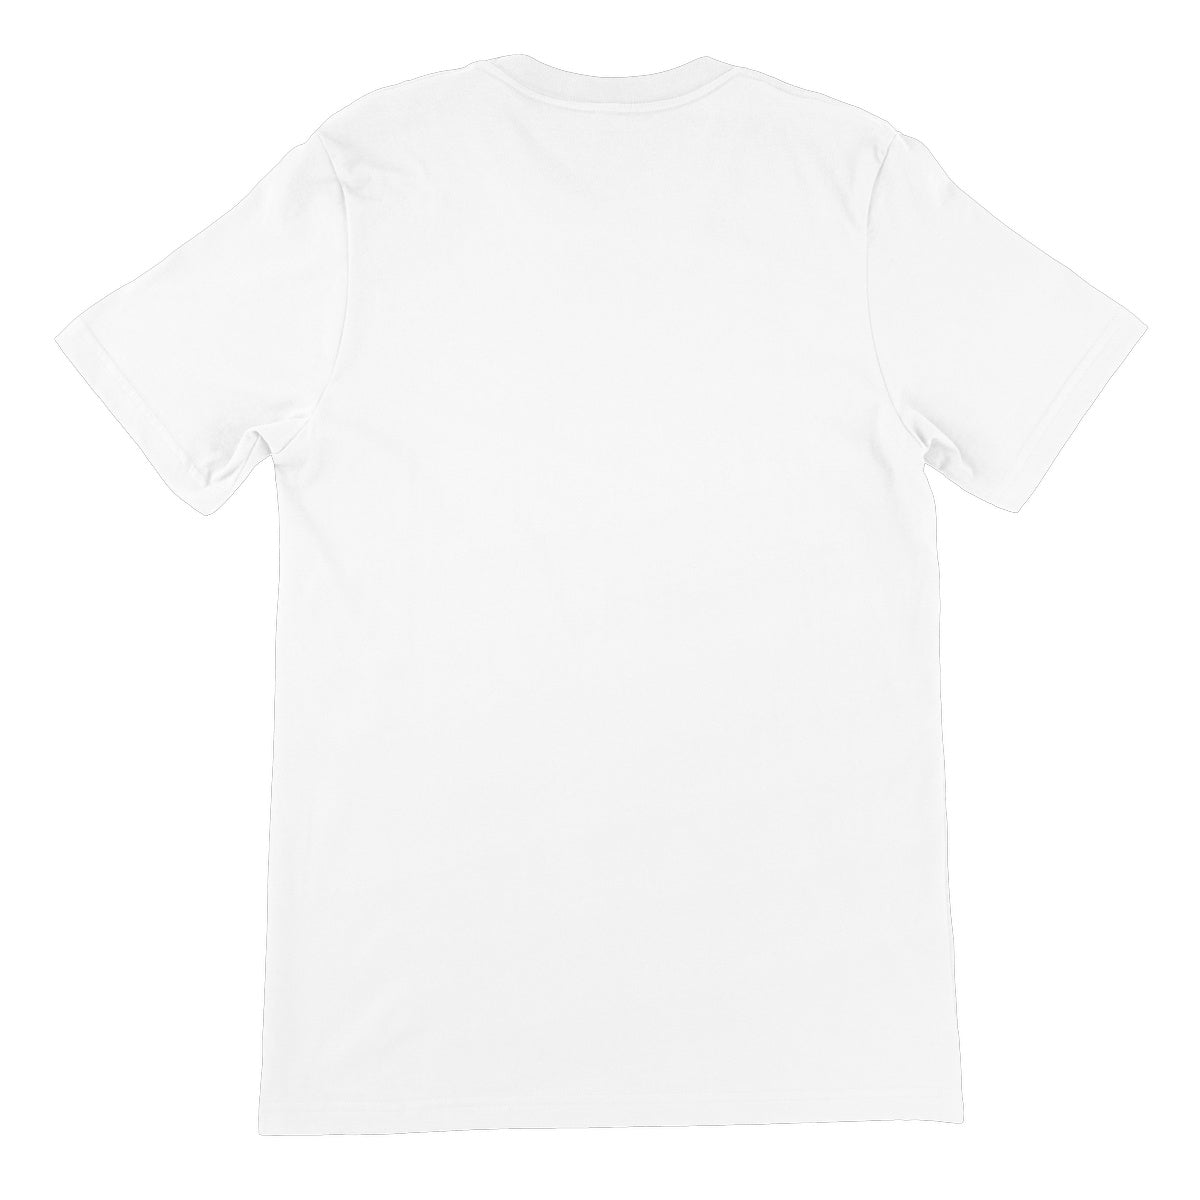 BoogieBusters Merch Unisex Short Sleeve T-Shirt